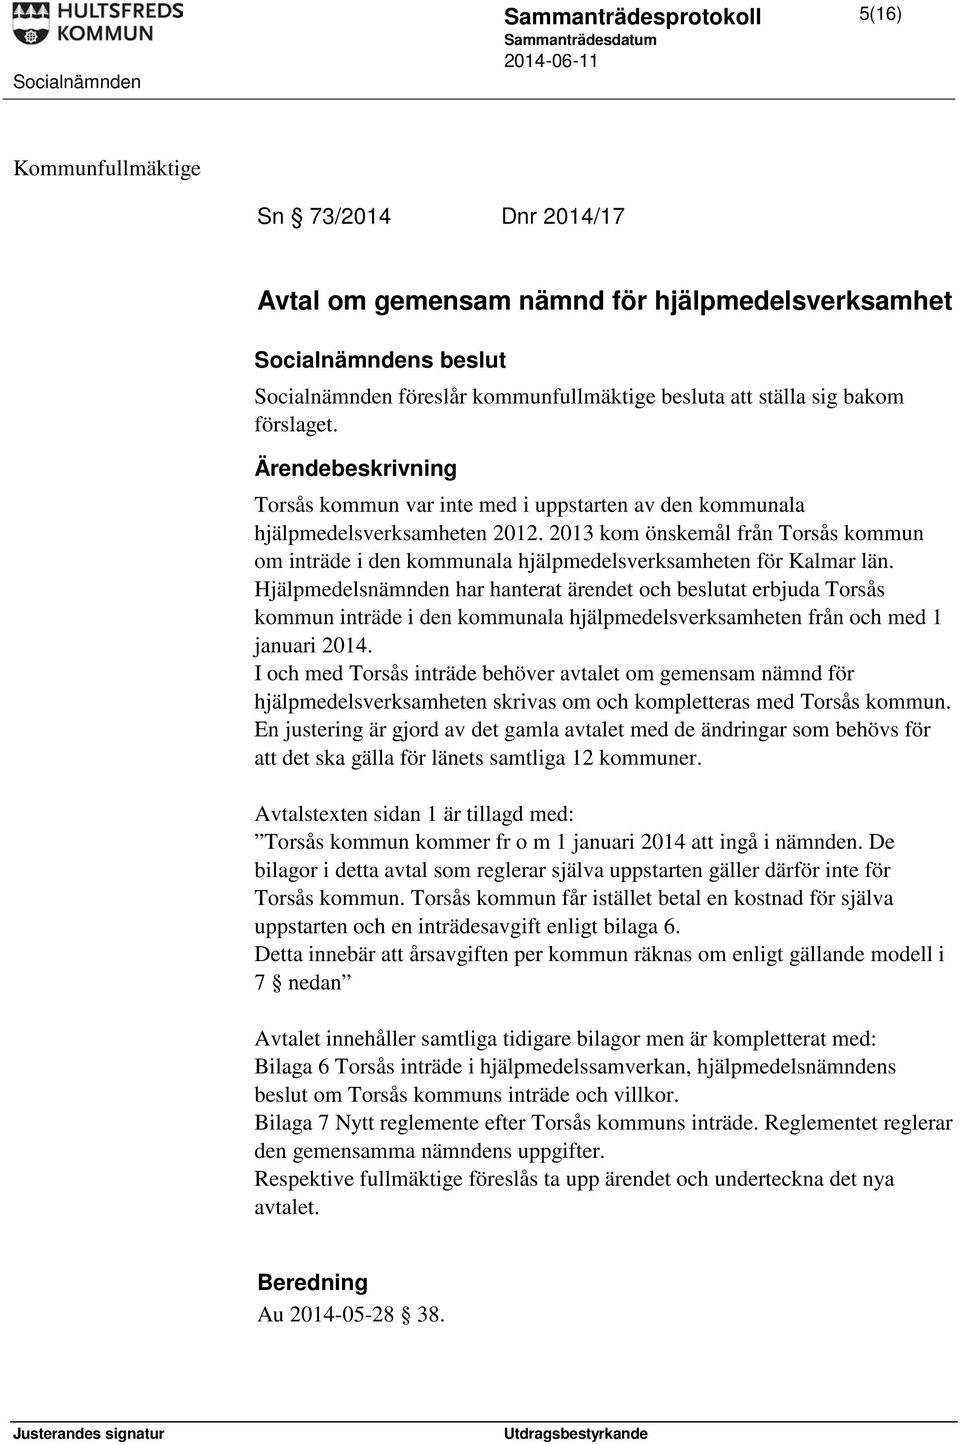 Hjälpmedelsnämnden har hanterat ärendet och beslutat erbjuda Torsås kommun inträde i den kommunala hjälpmedelsverksamheten från och med 1 januari 2014.